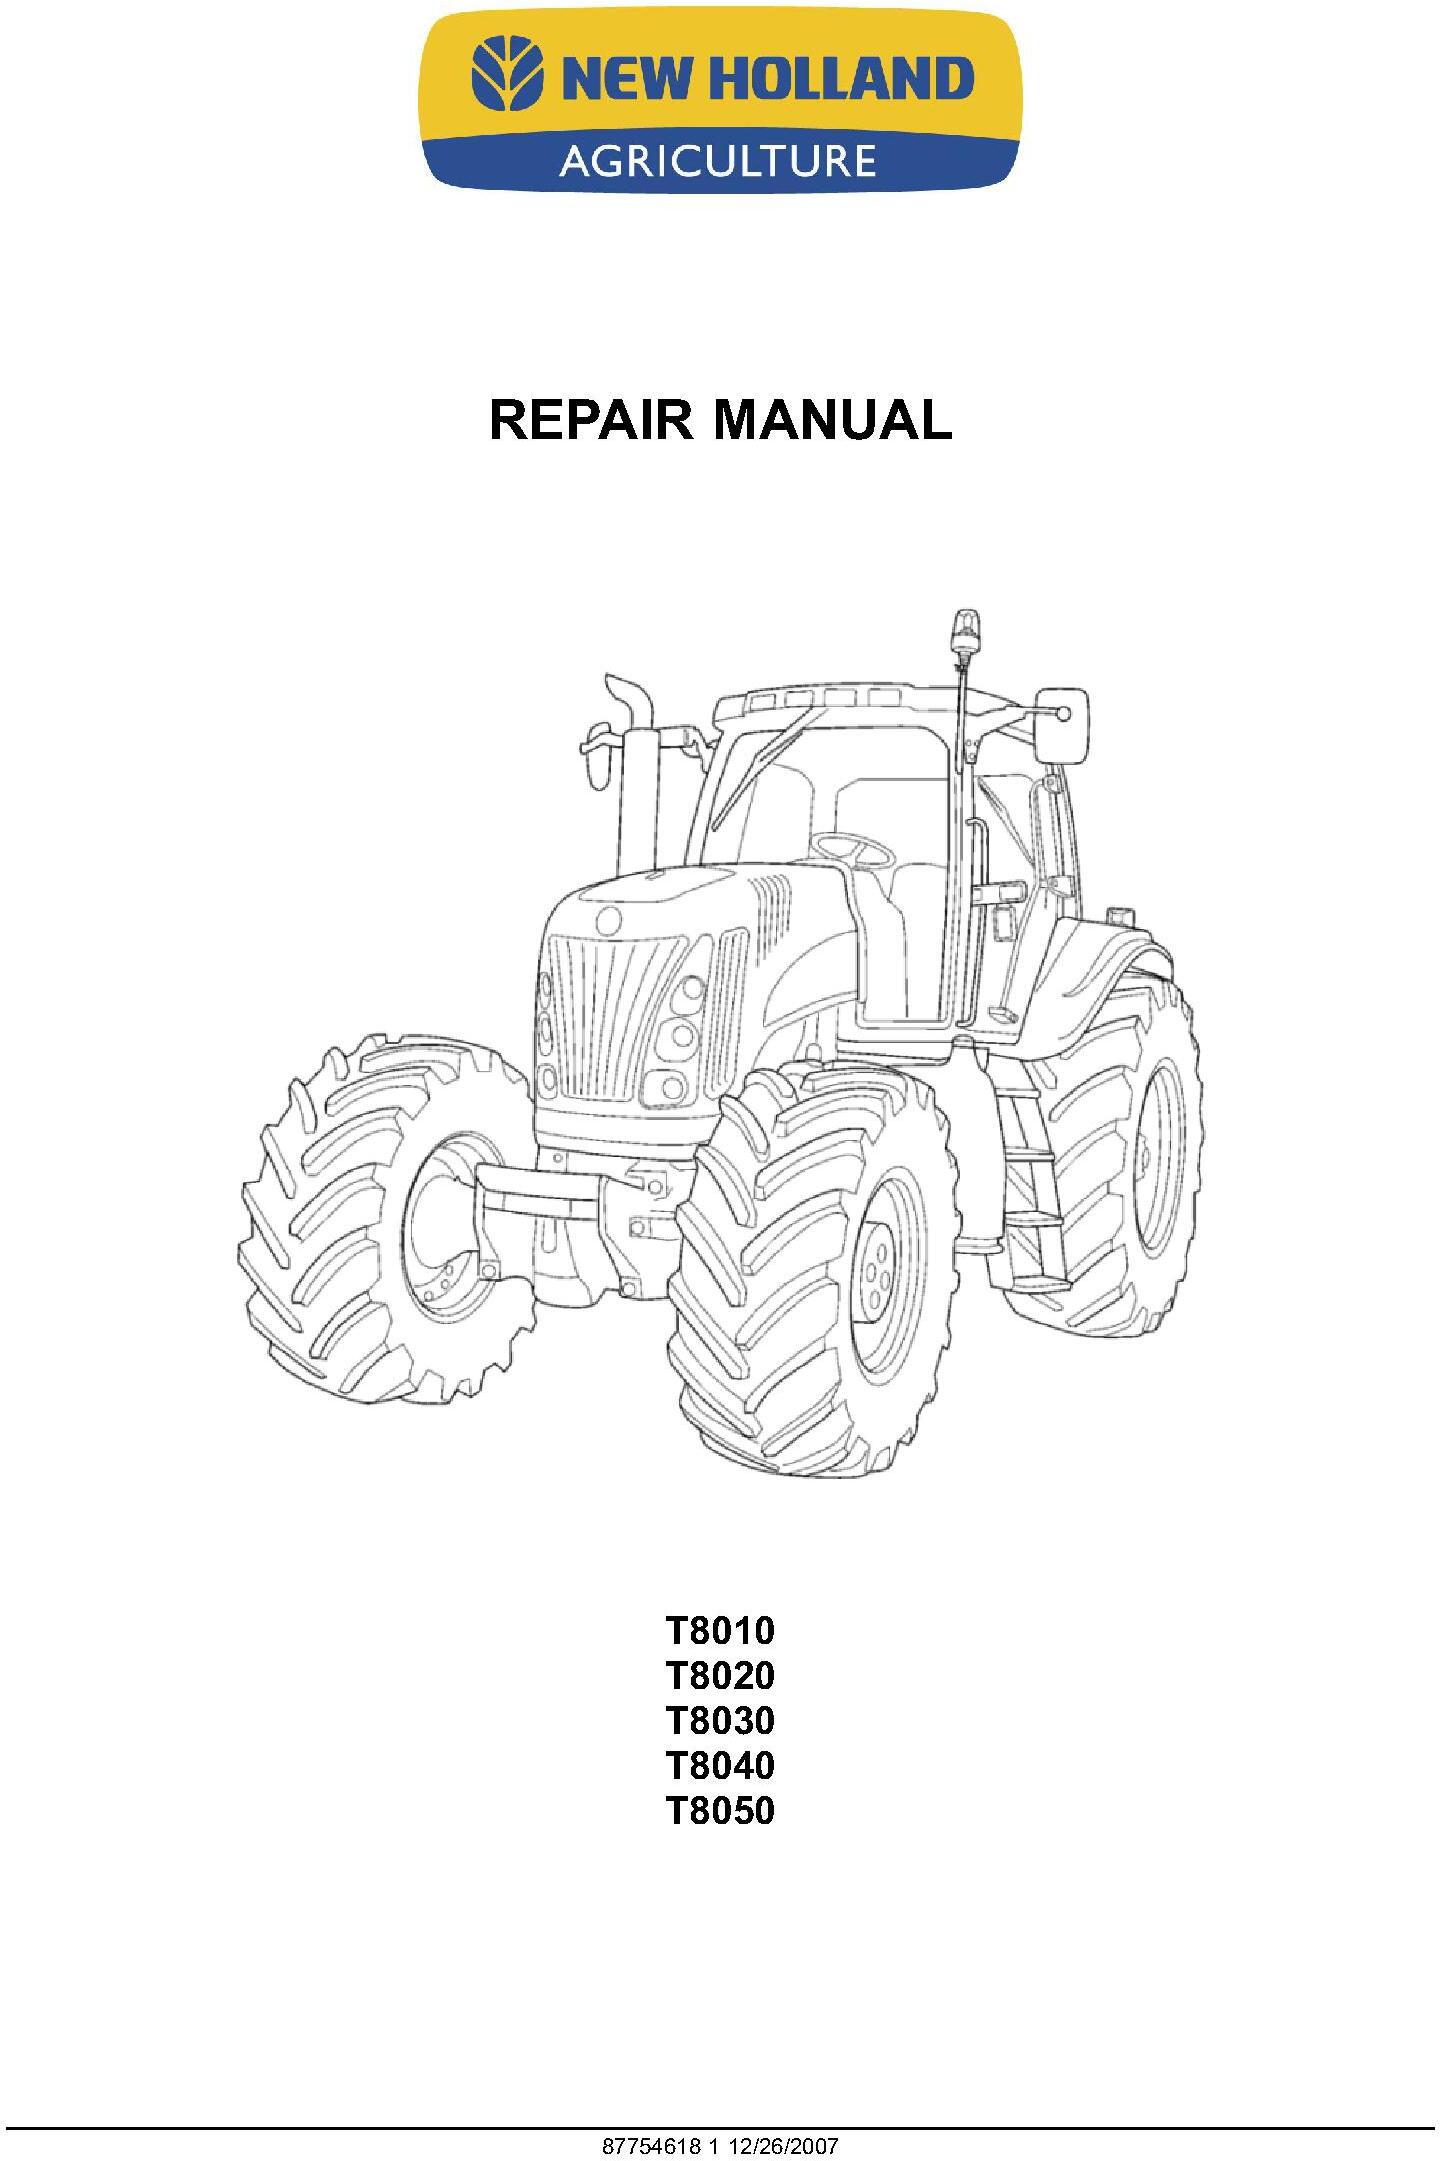 New Holland T8010, T8020, T8030, T8040, T8050 Tractors Service Manual - 20005